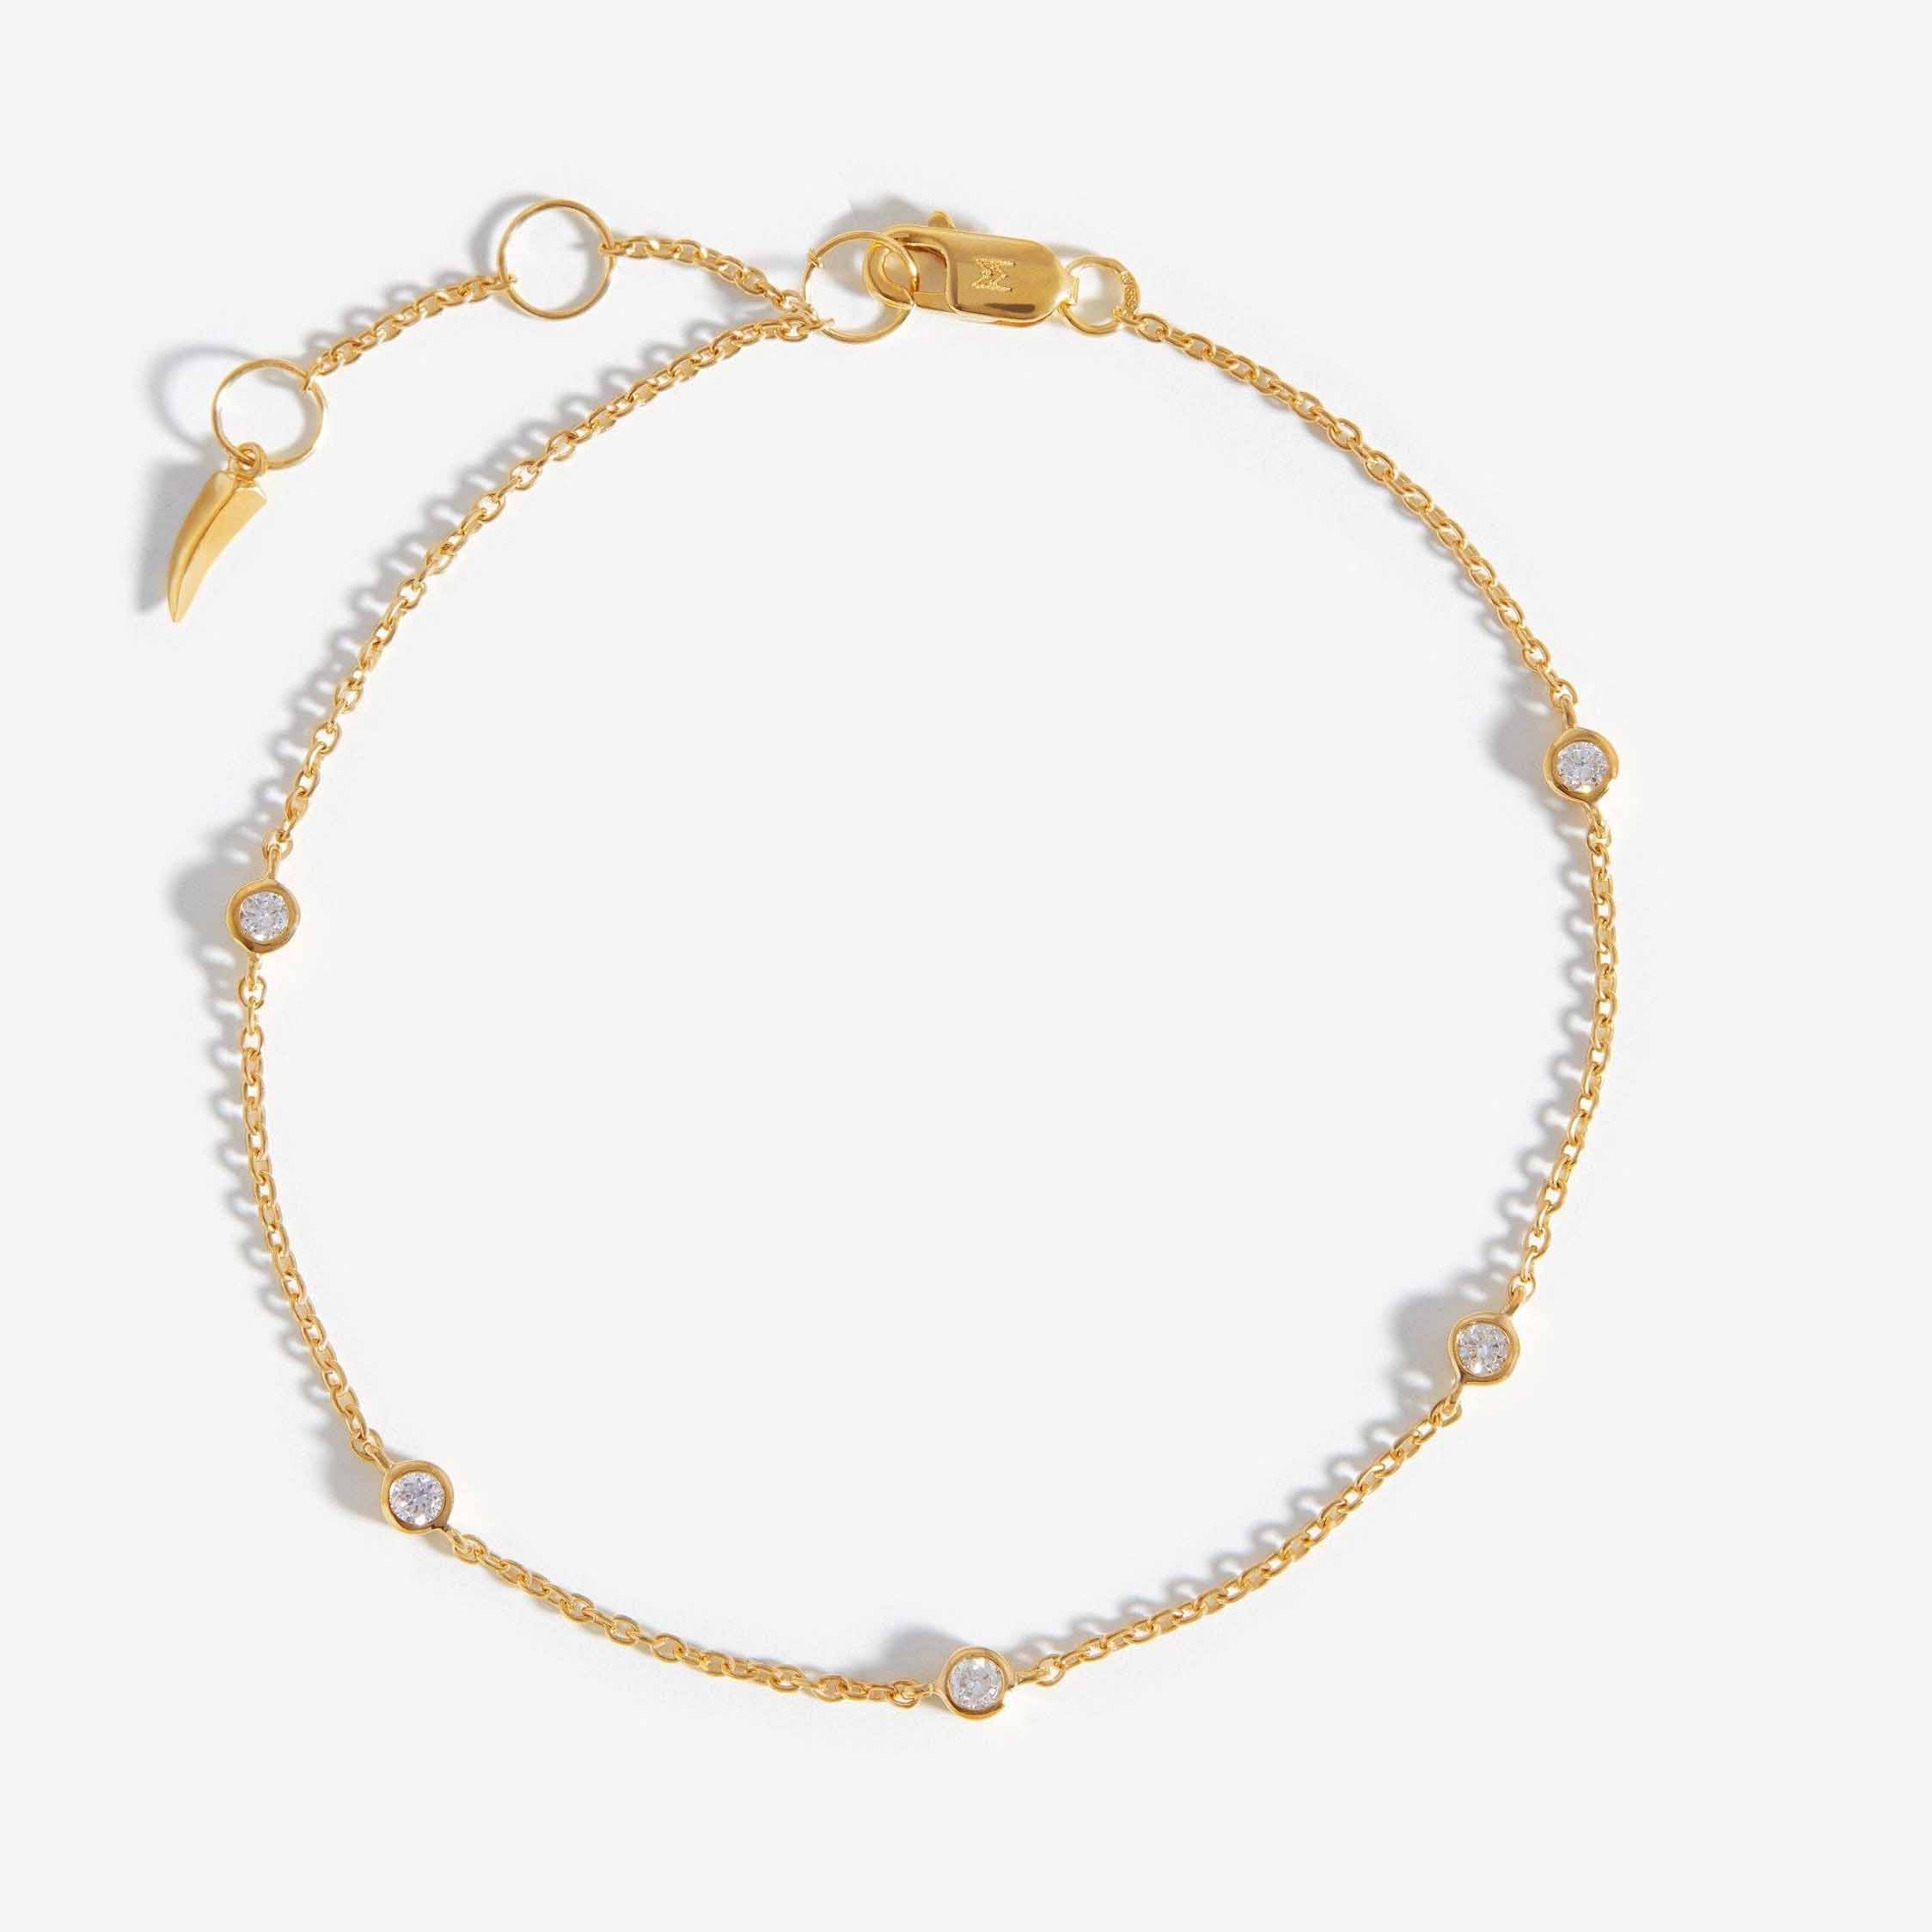 Skep jou eie ontwerp in 925 silwer armband ketting juweliersware vermeil 14k goud